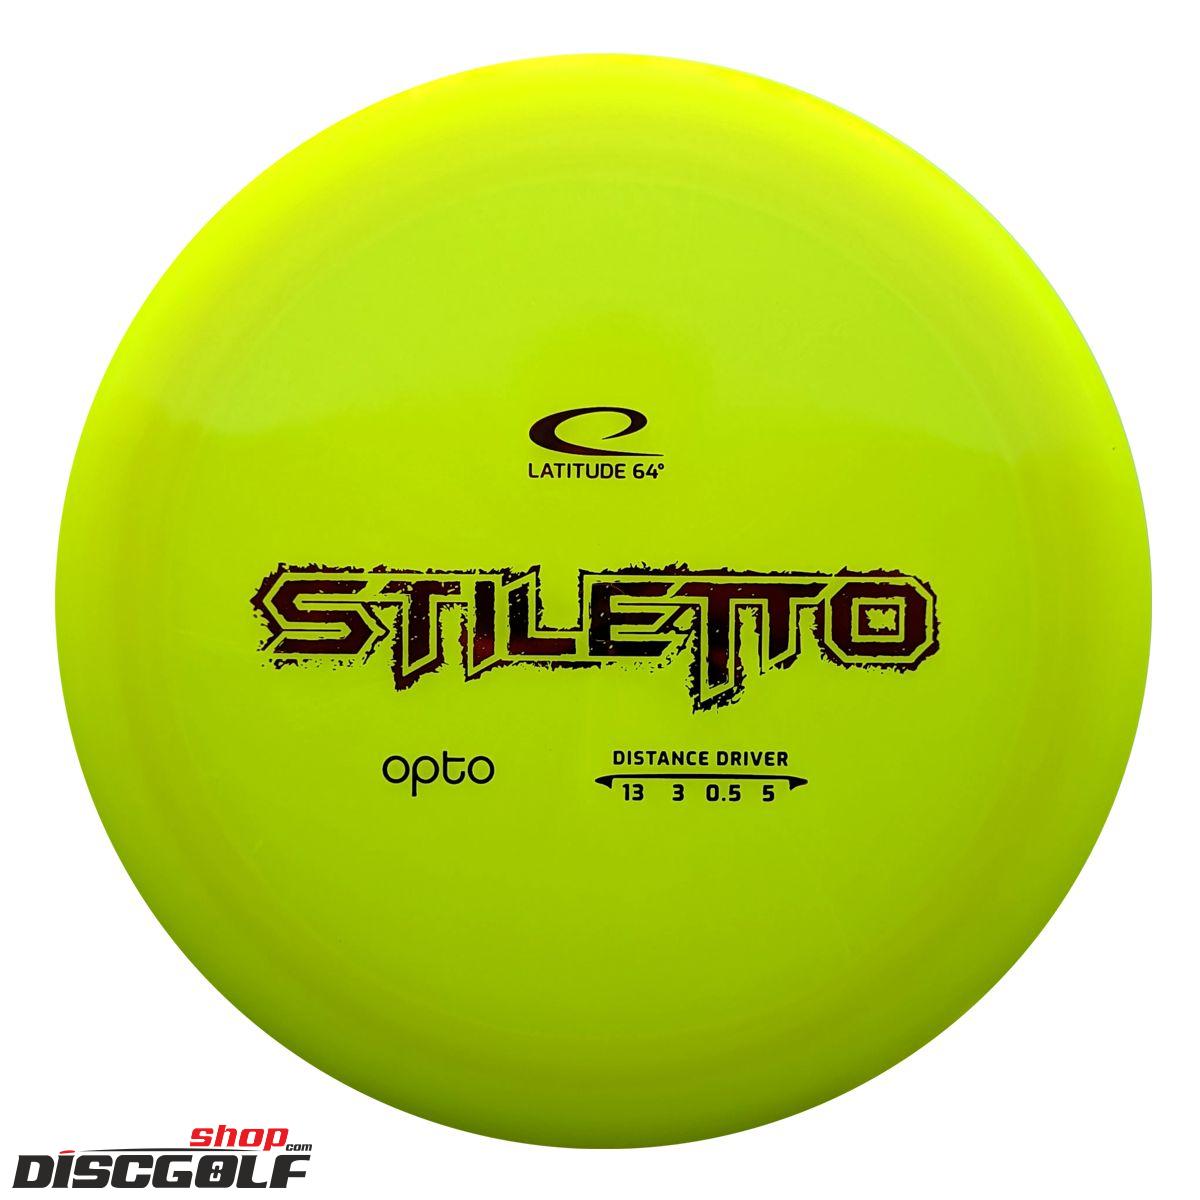 Latitude 64° Stiletto Opto (discgolf)